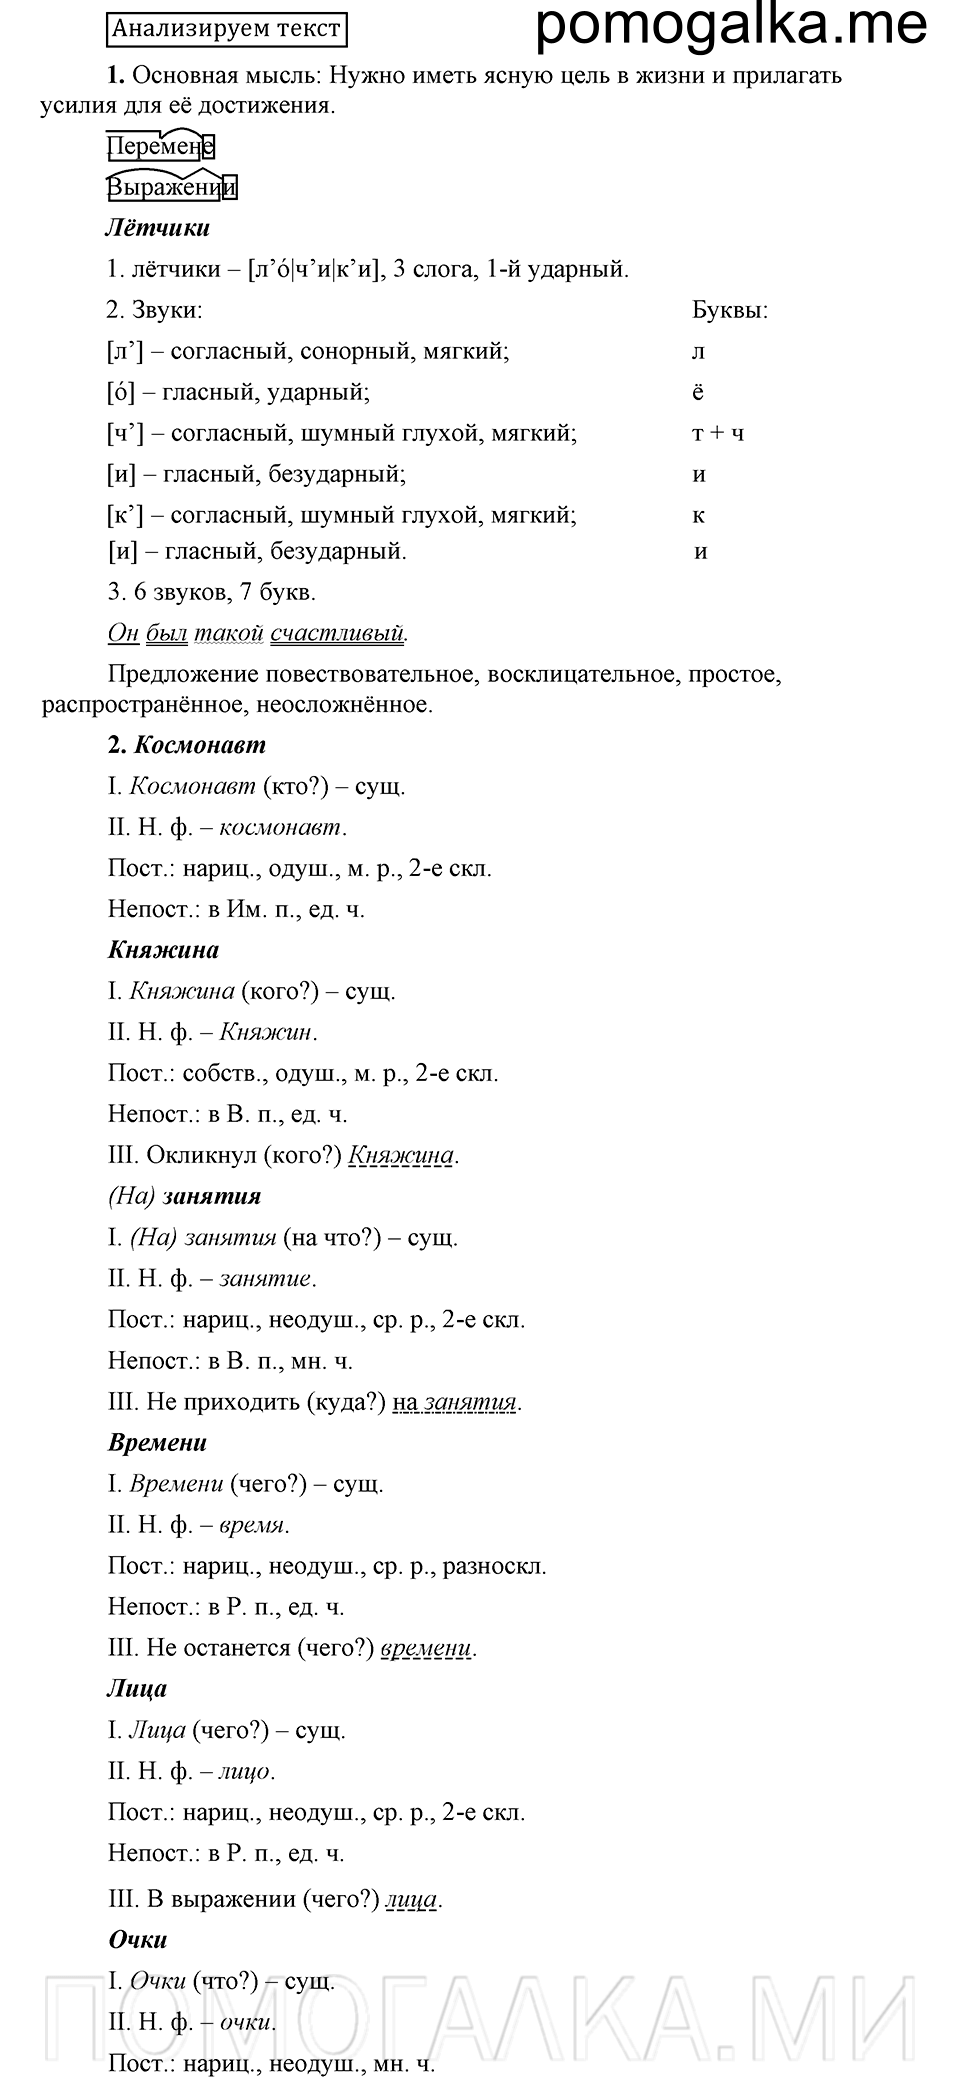 Анализ, русский язык 6 класс Быстрова, Кибирева 1 часть 2019 год